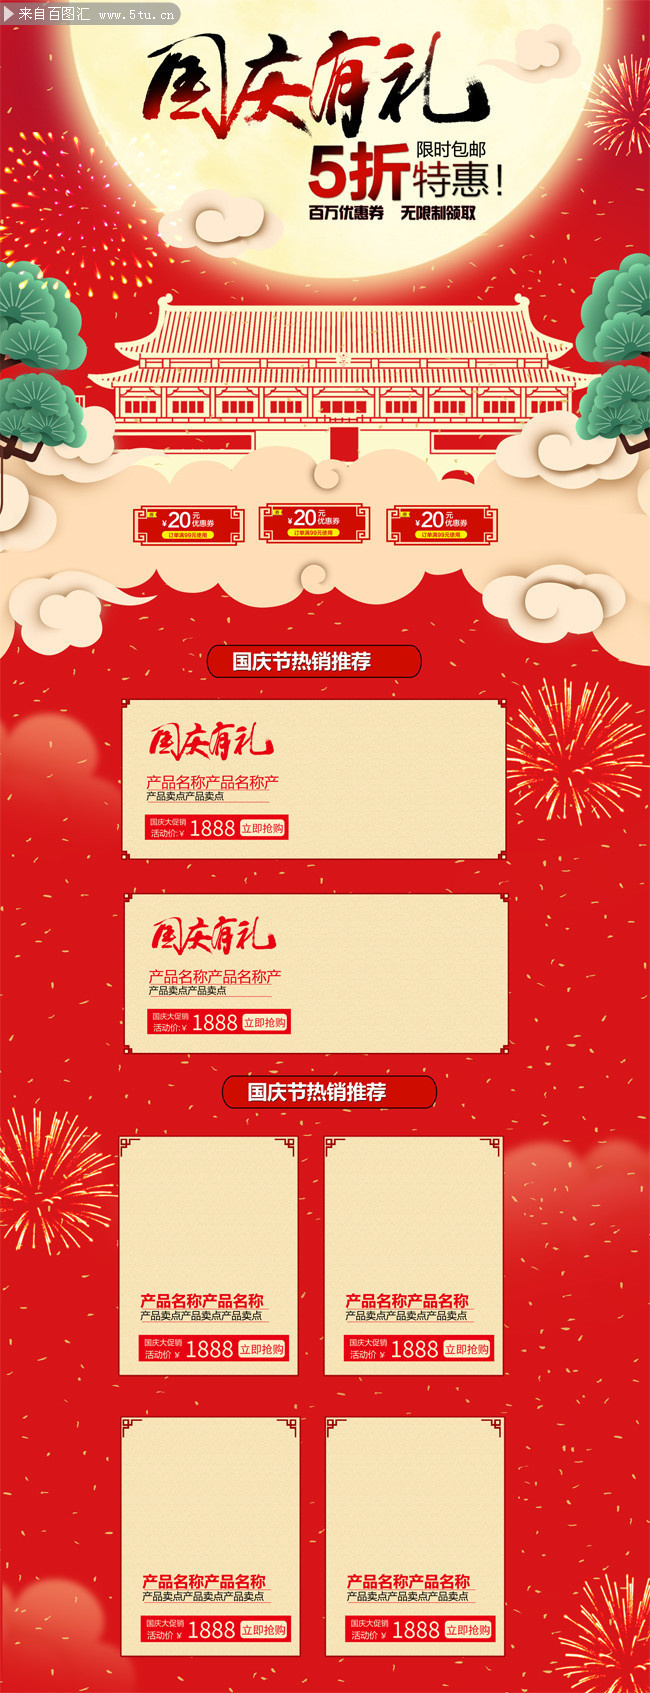 淘宝天猫国庆节首页装修模板图片